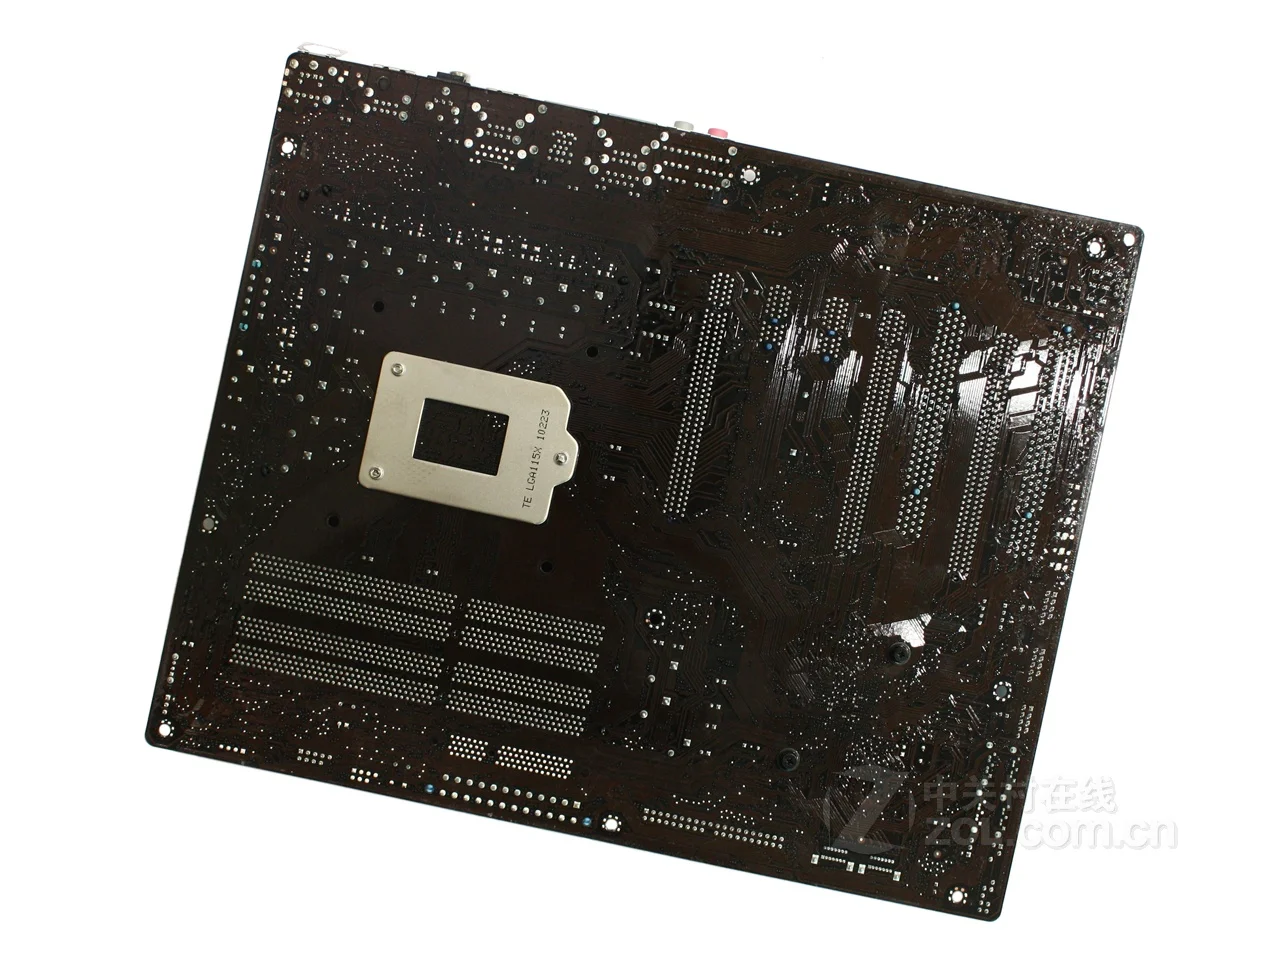 Материнская плата ASUS P7P55D Pro DDR3 16 ГБ P55 P7P55D-PRO настольная плата LGA 1156 системная плата SATA II PCI-E X16 AMI